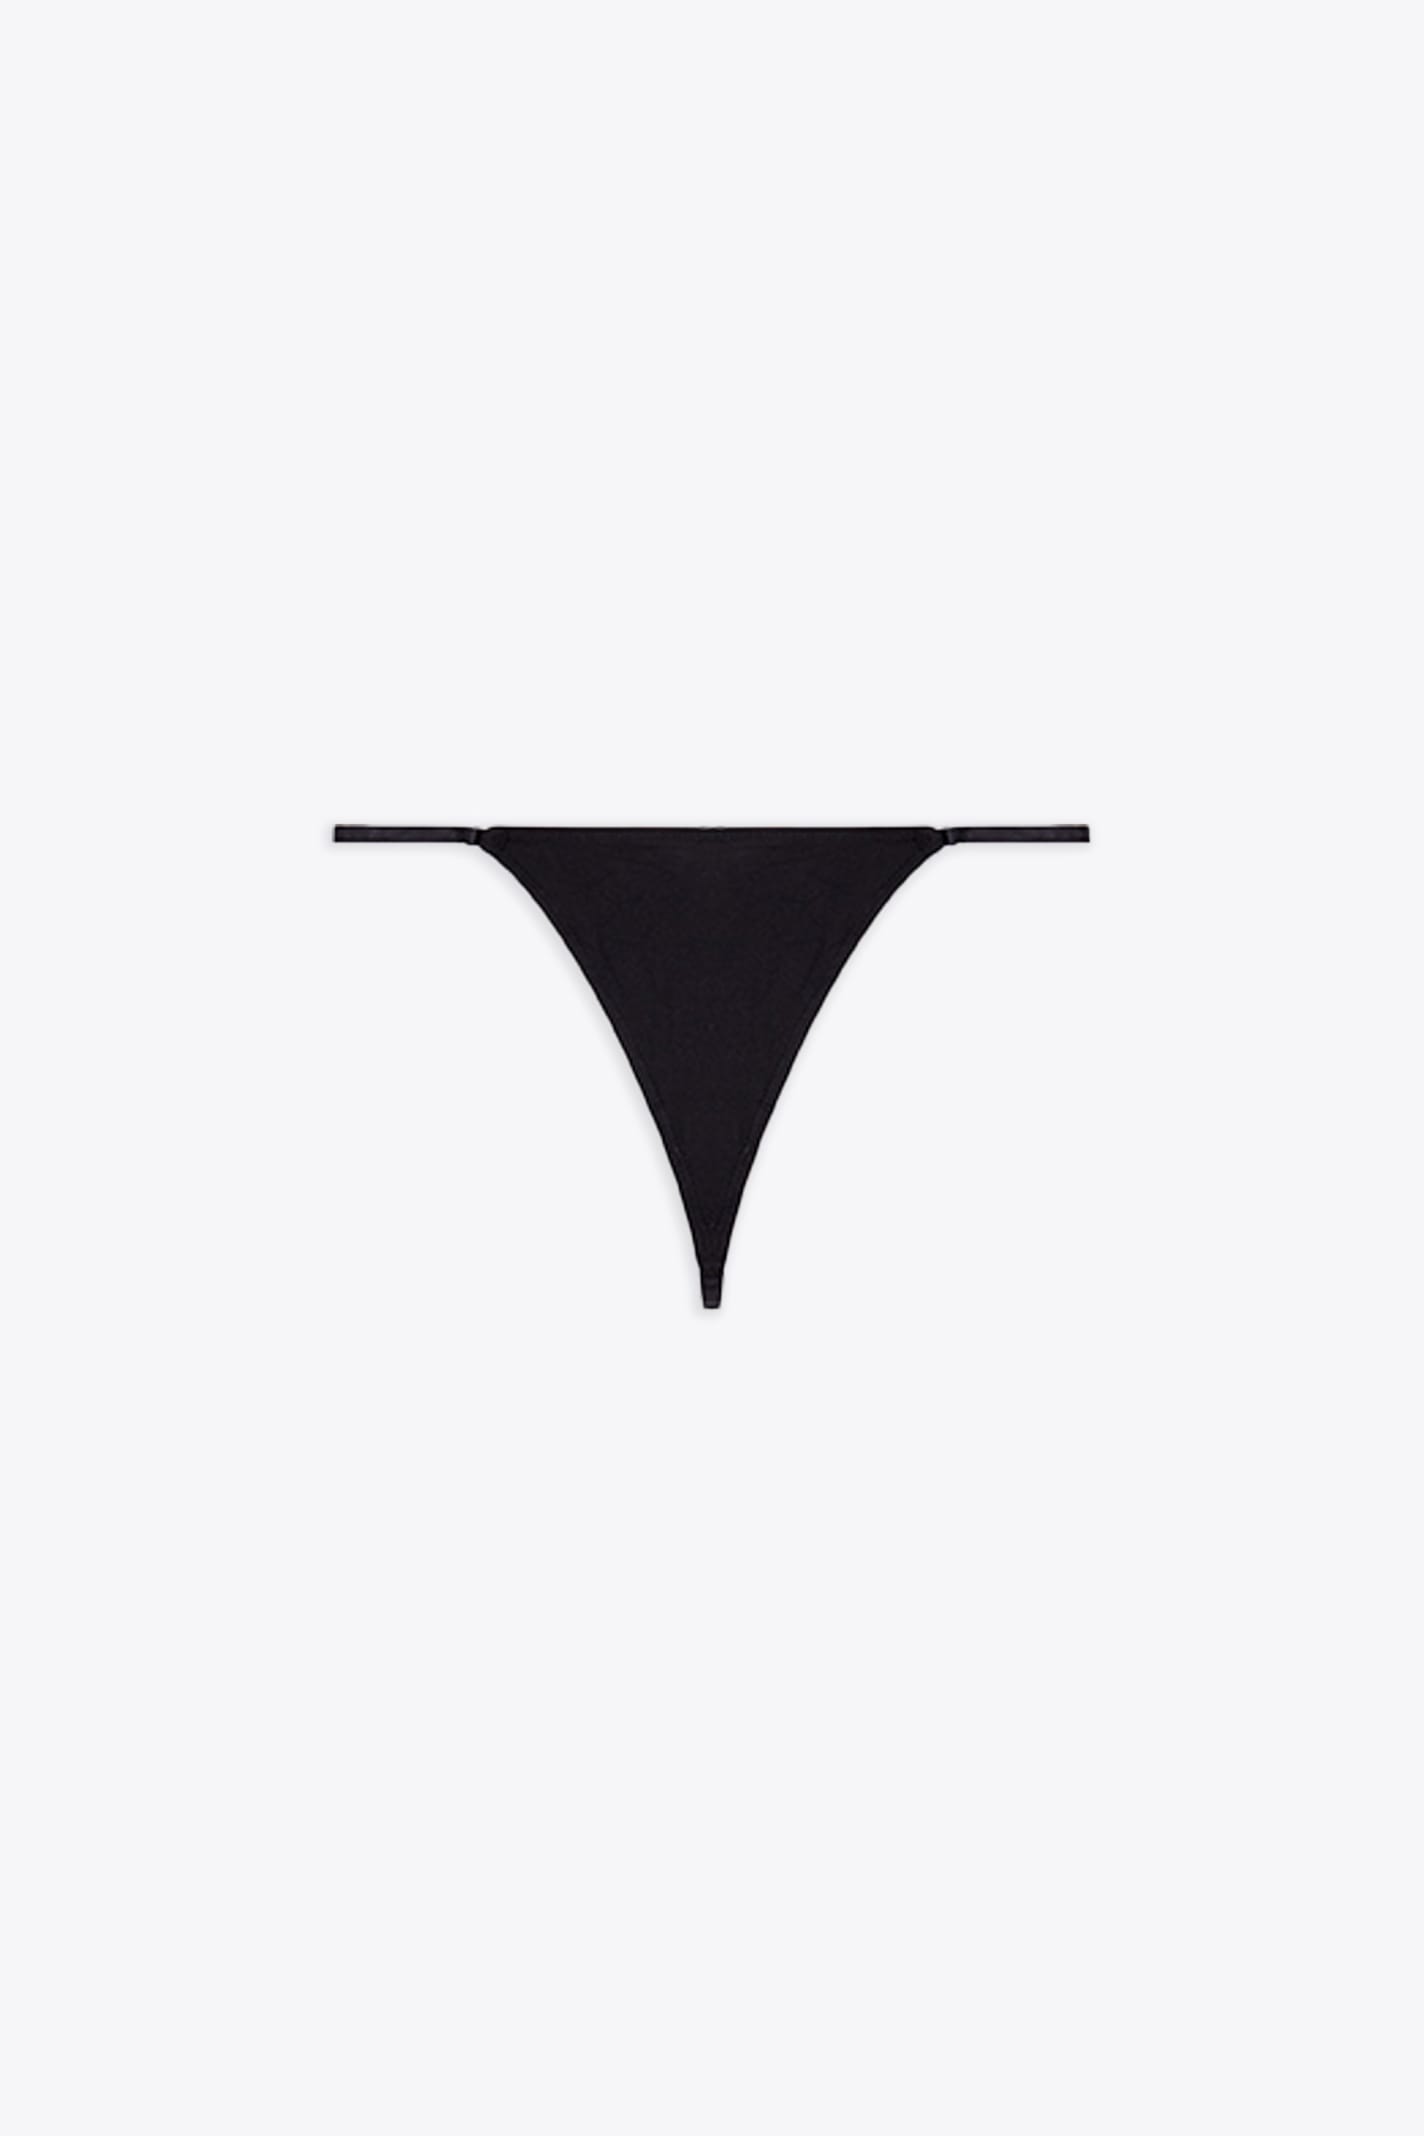 Ufst-d-string Black thong with metal Oval D logo - Ufst D-String